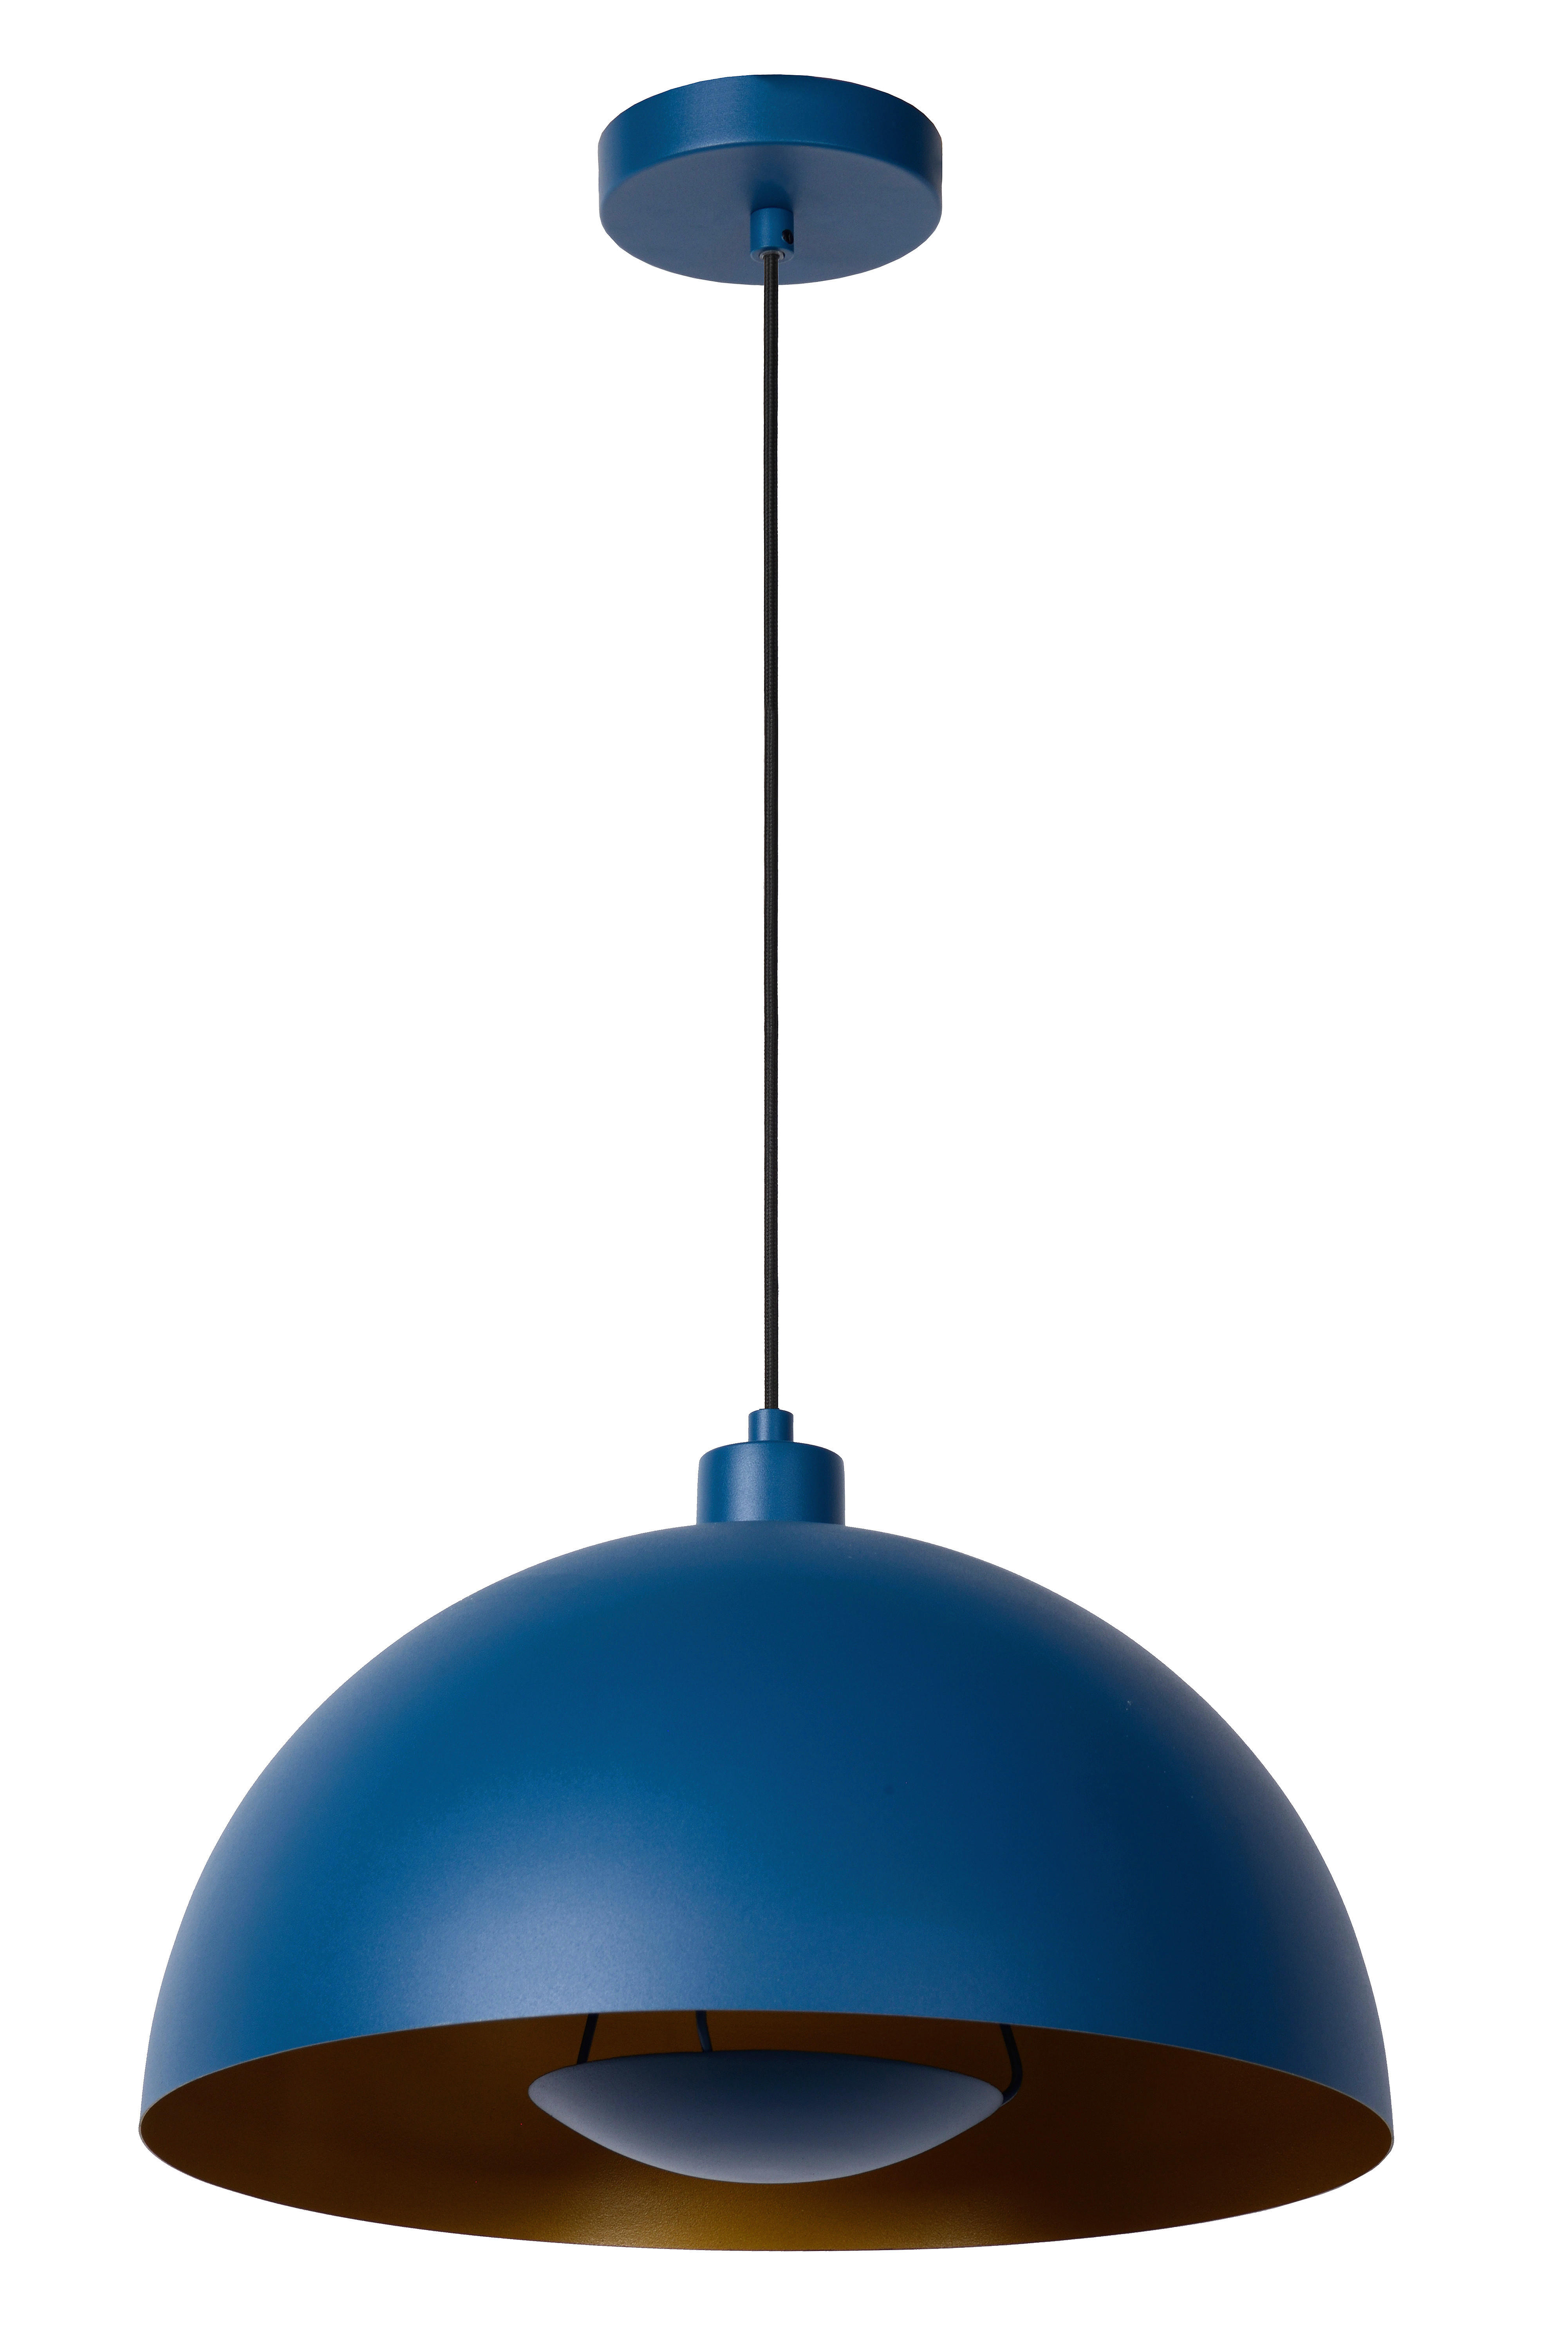 HÄNGELEUCHTE SIEMON  - Blau, Design, Metall (40/150cm)